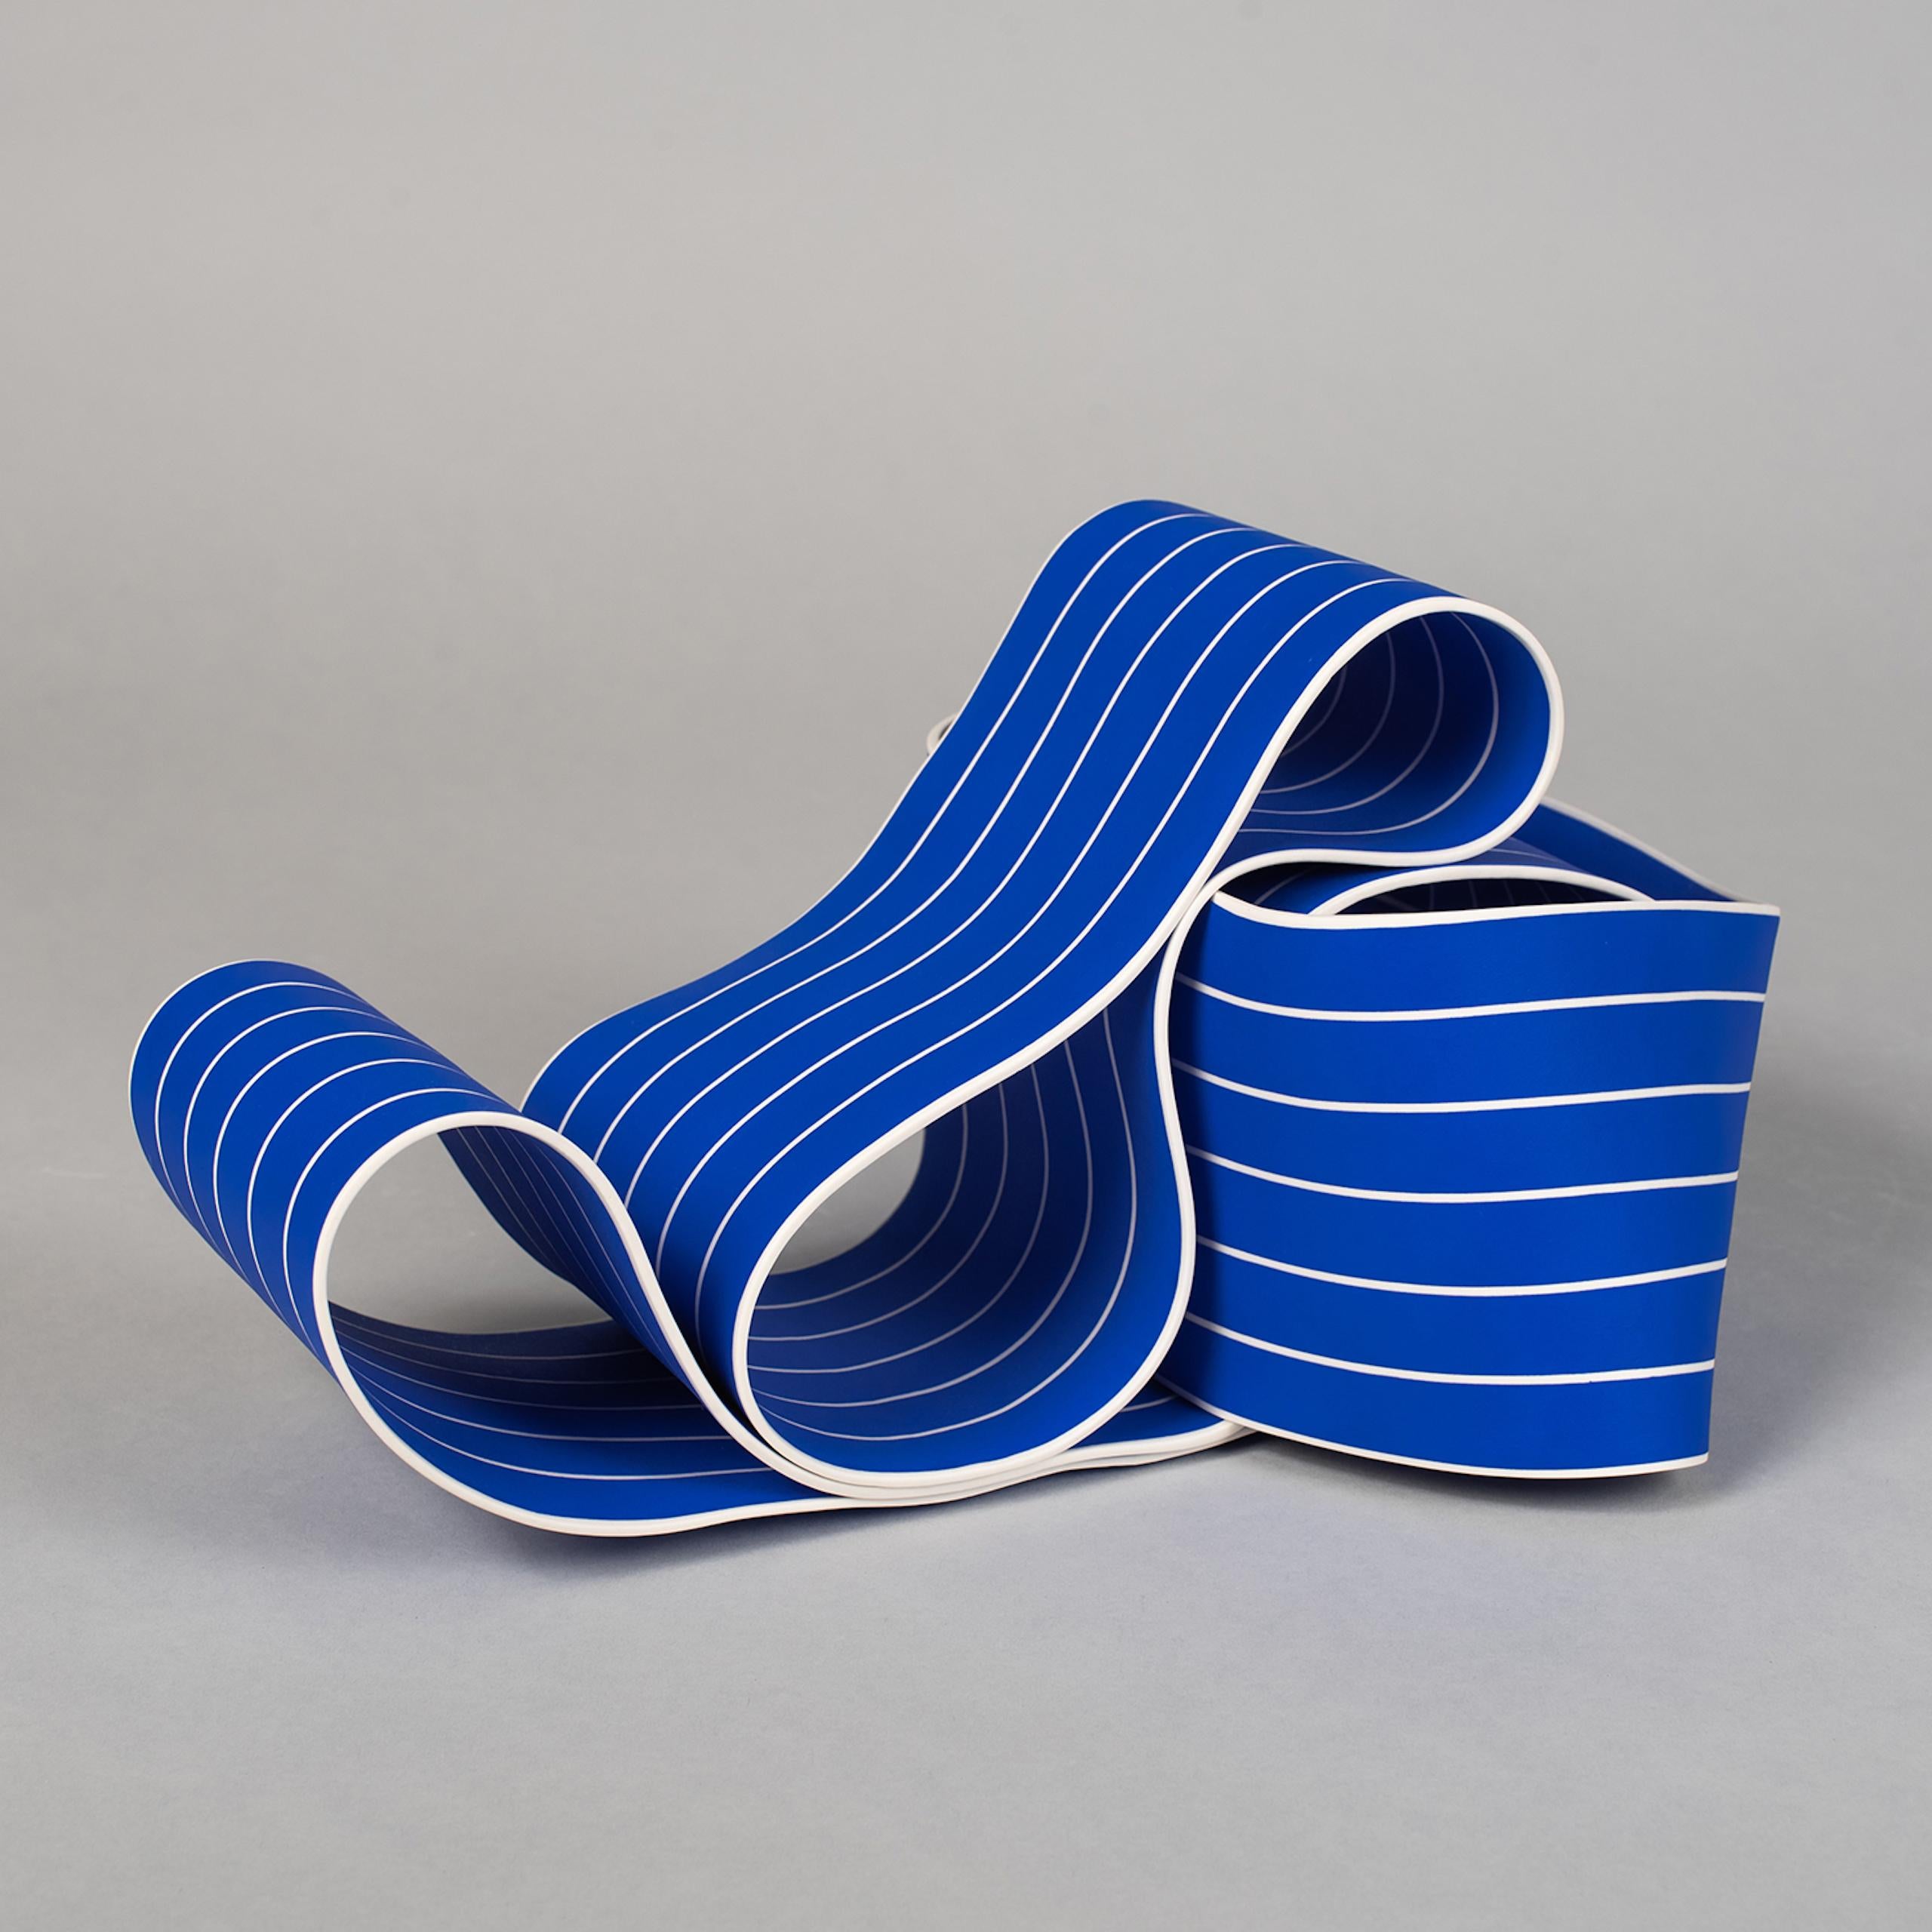 Entrapped 1 by Simcha Even-Chen - Porcelain sculpture, blue lines, movement For Sale 6